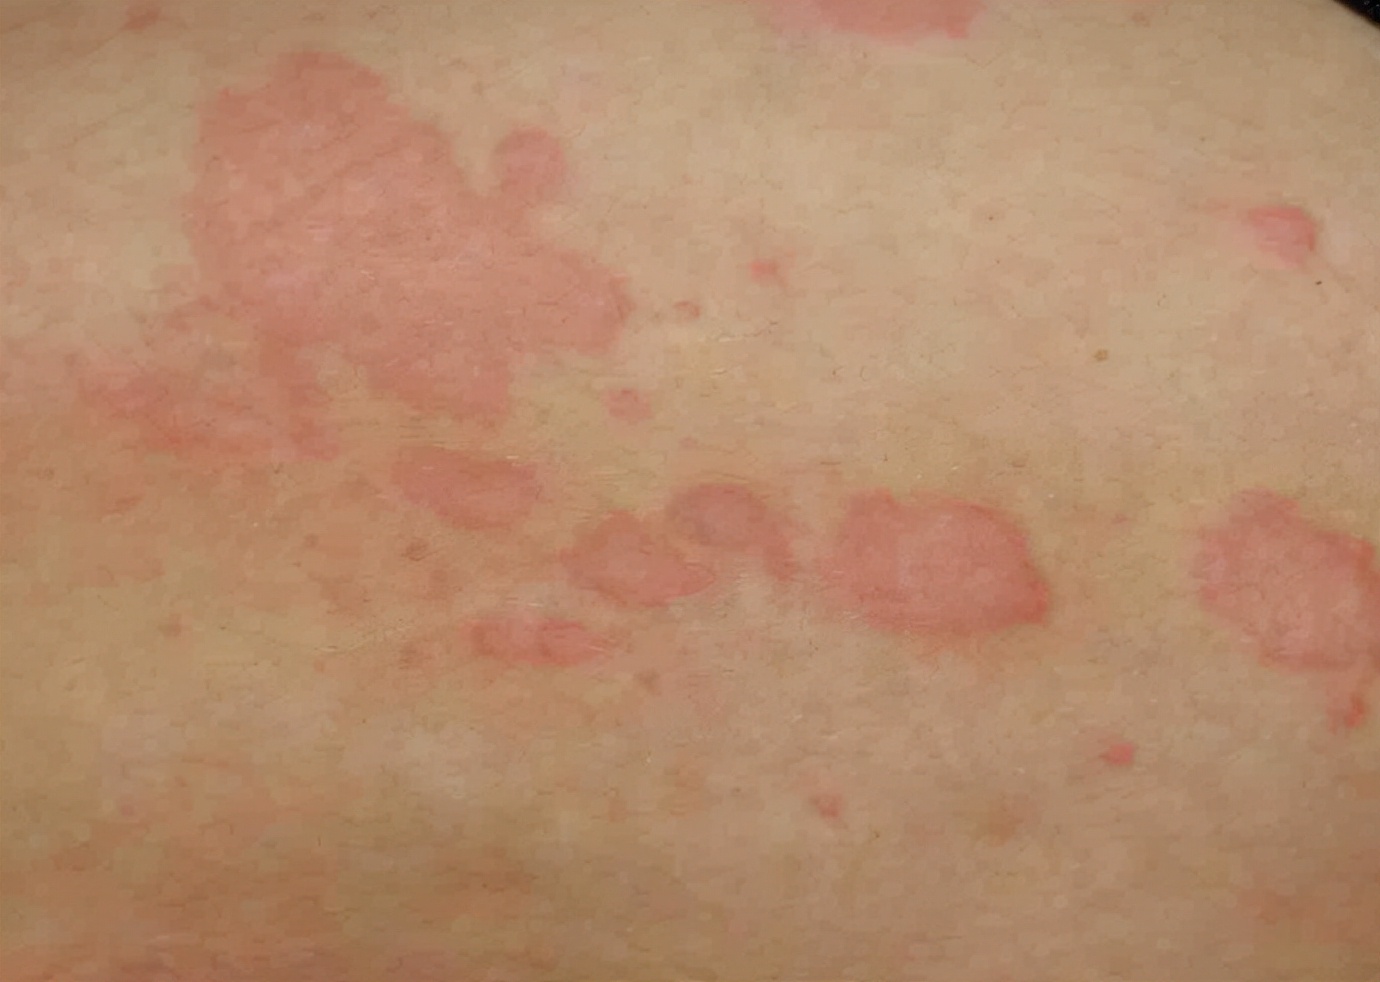 多形性红斑是一种急性炎症性皮肤病,常伴有粘膜损伤,易复发